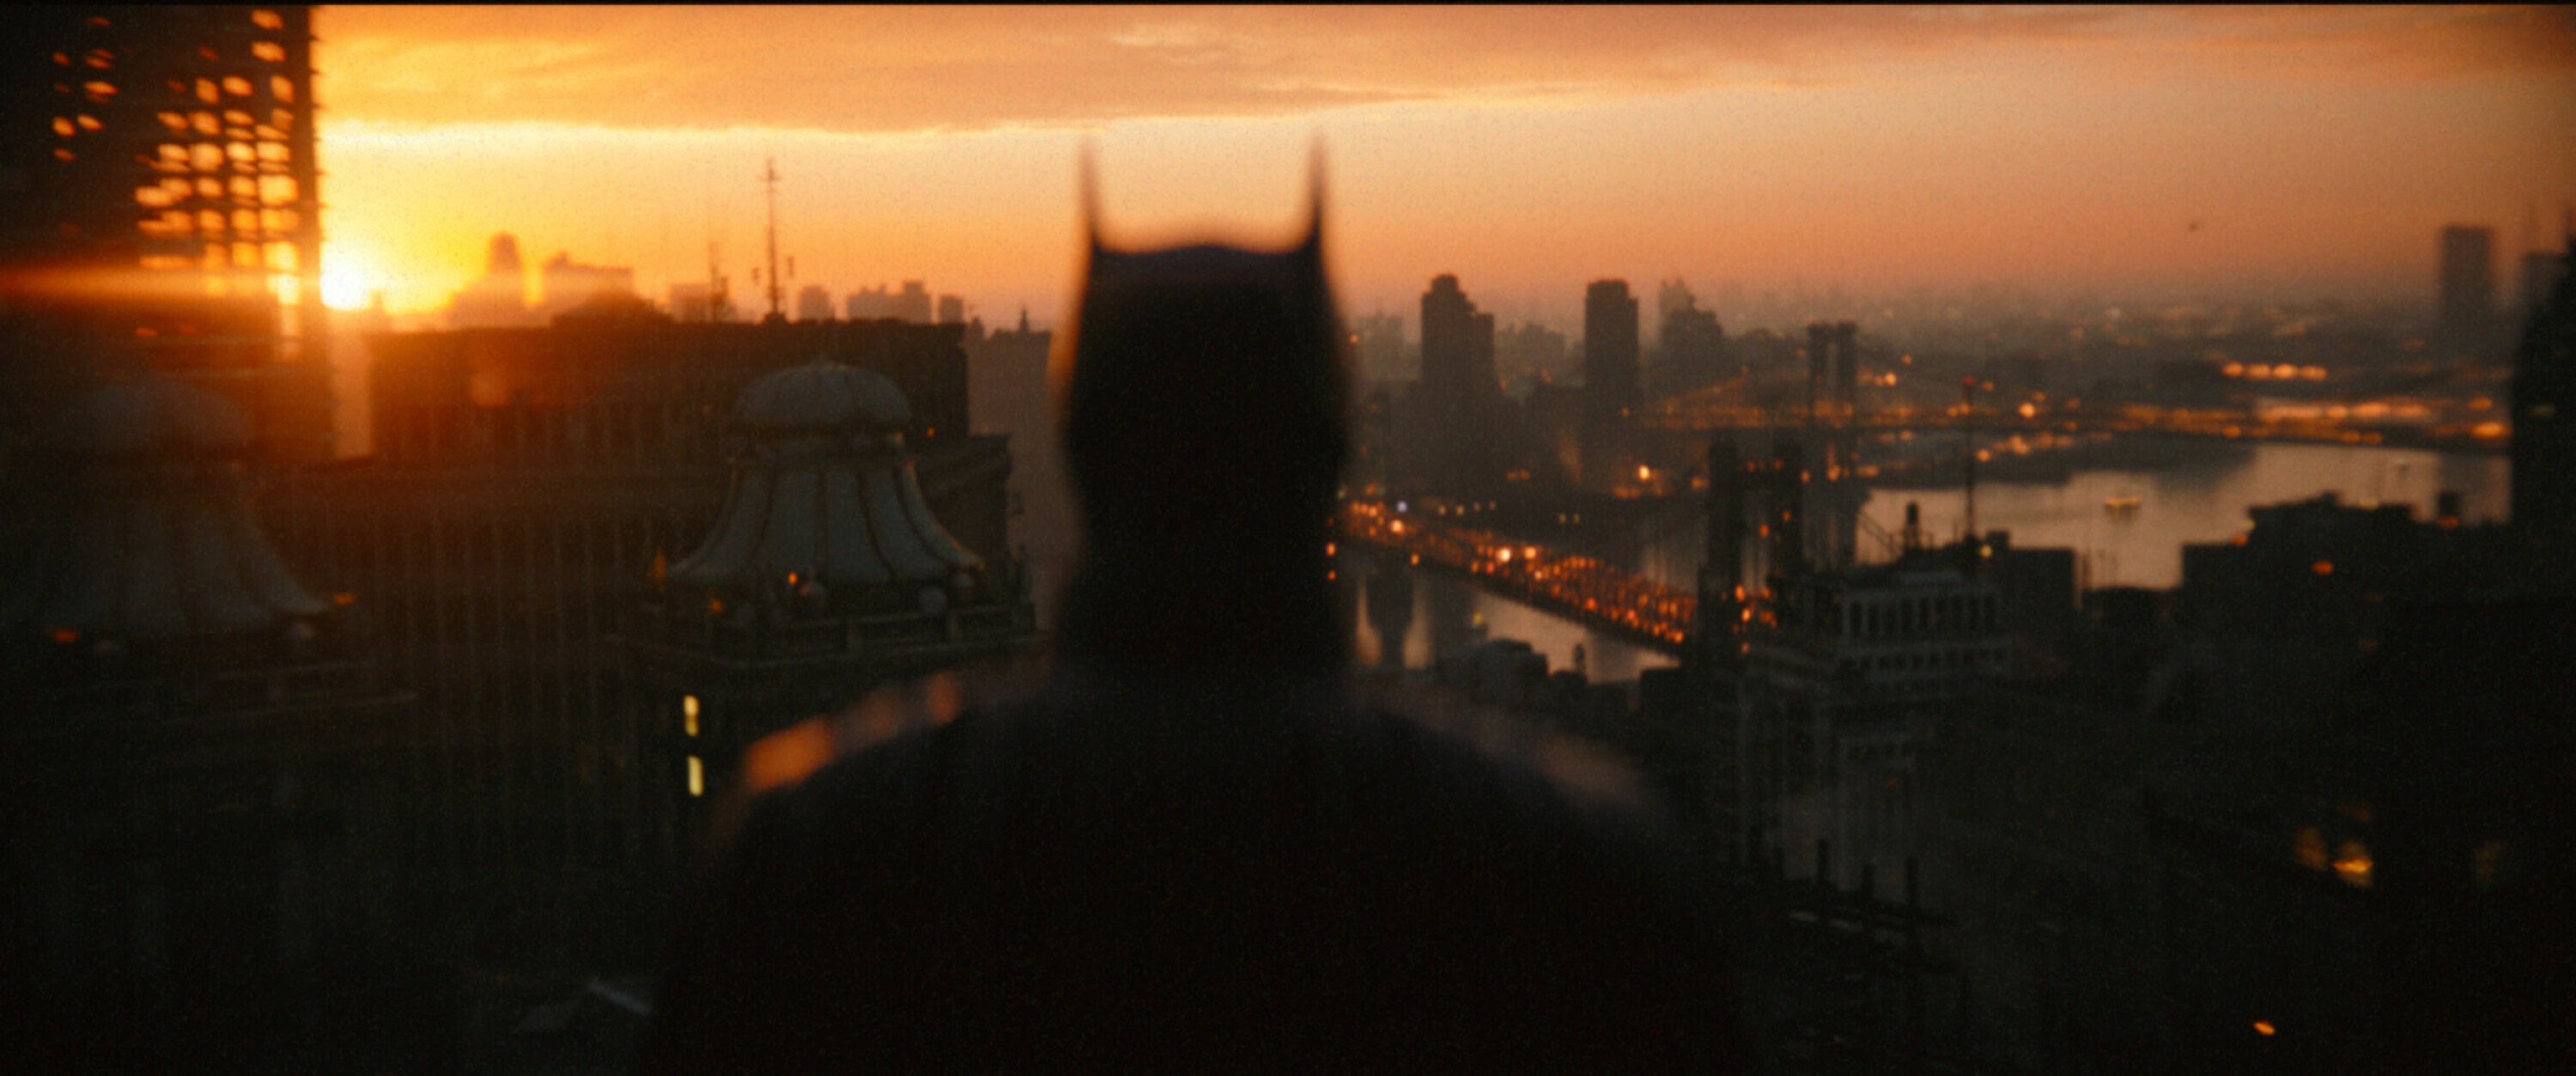 Batman vokter over dystopiske Gotham, som får et sjeldent besøk av solen